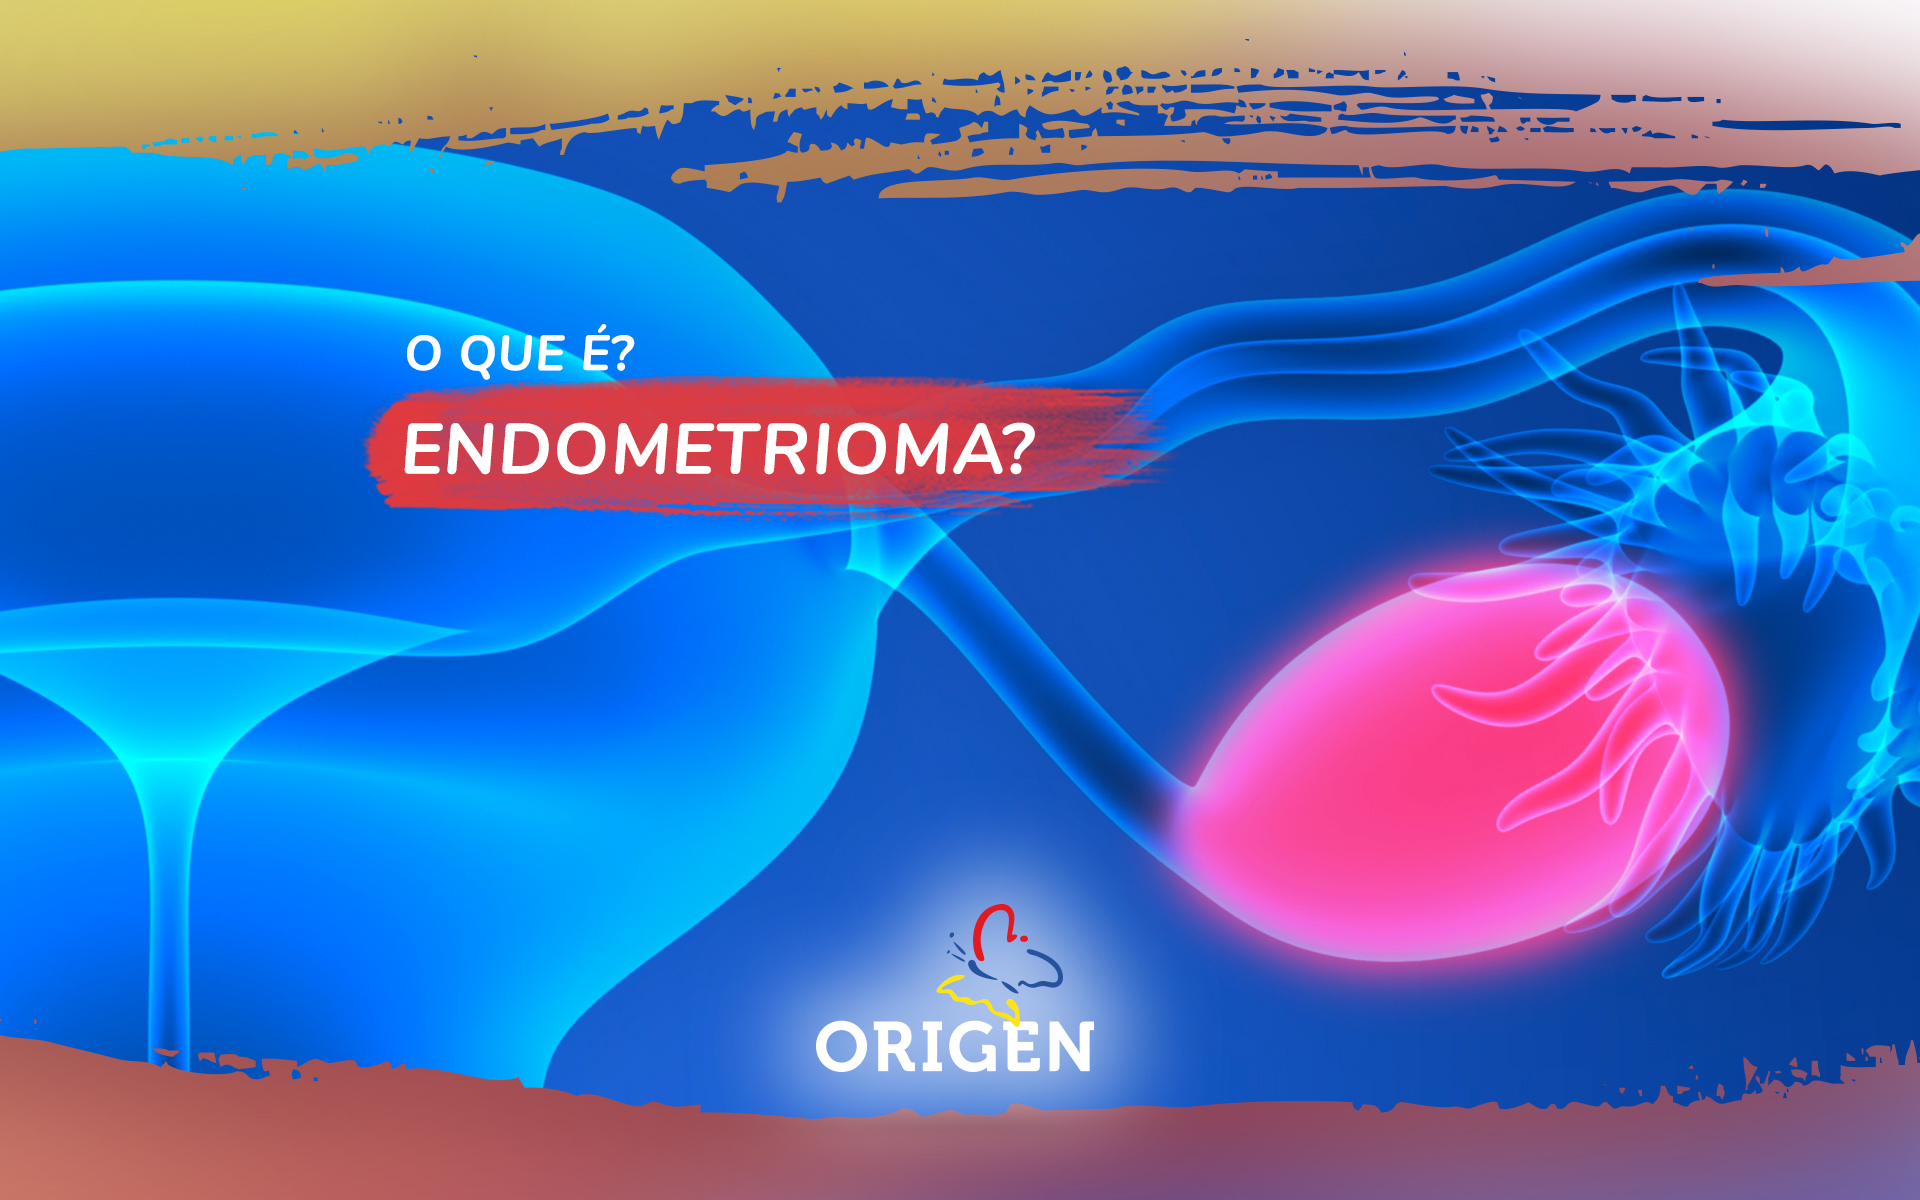 O que é endometrioma?